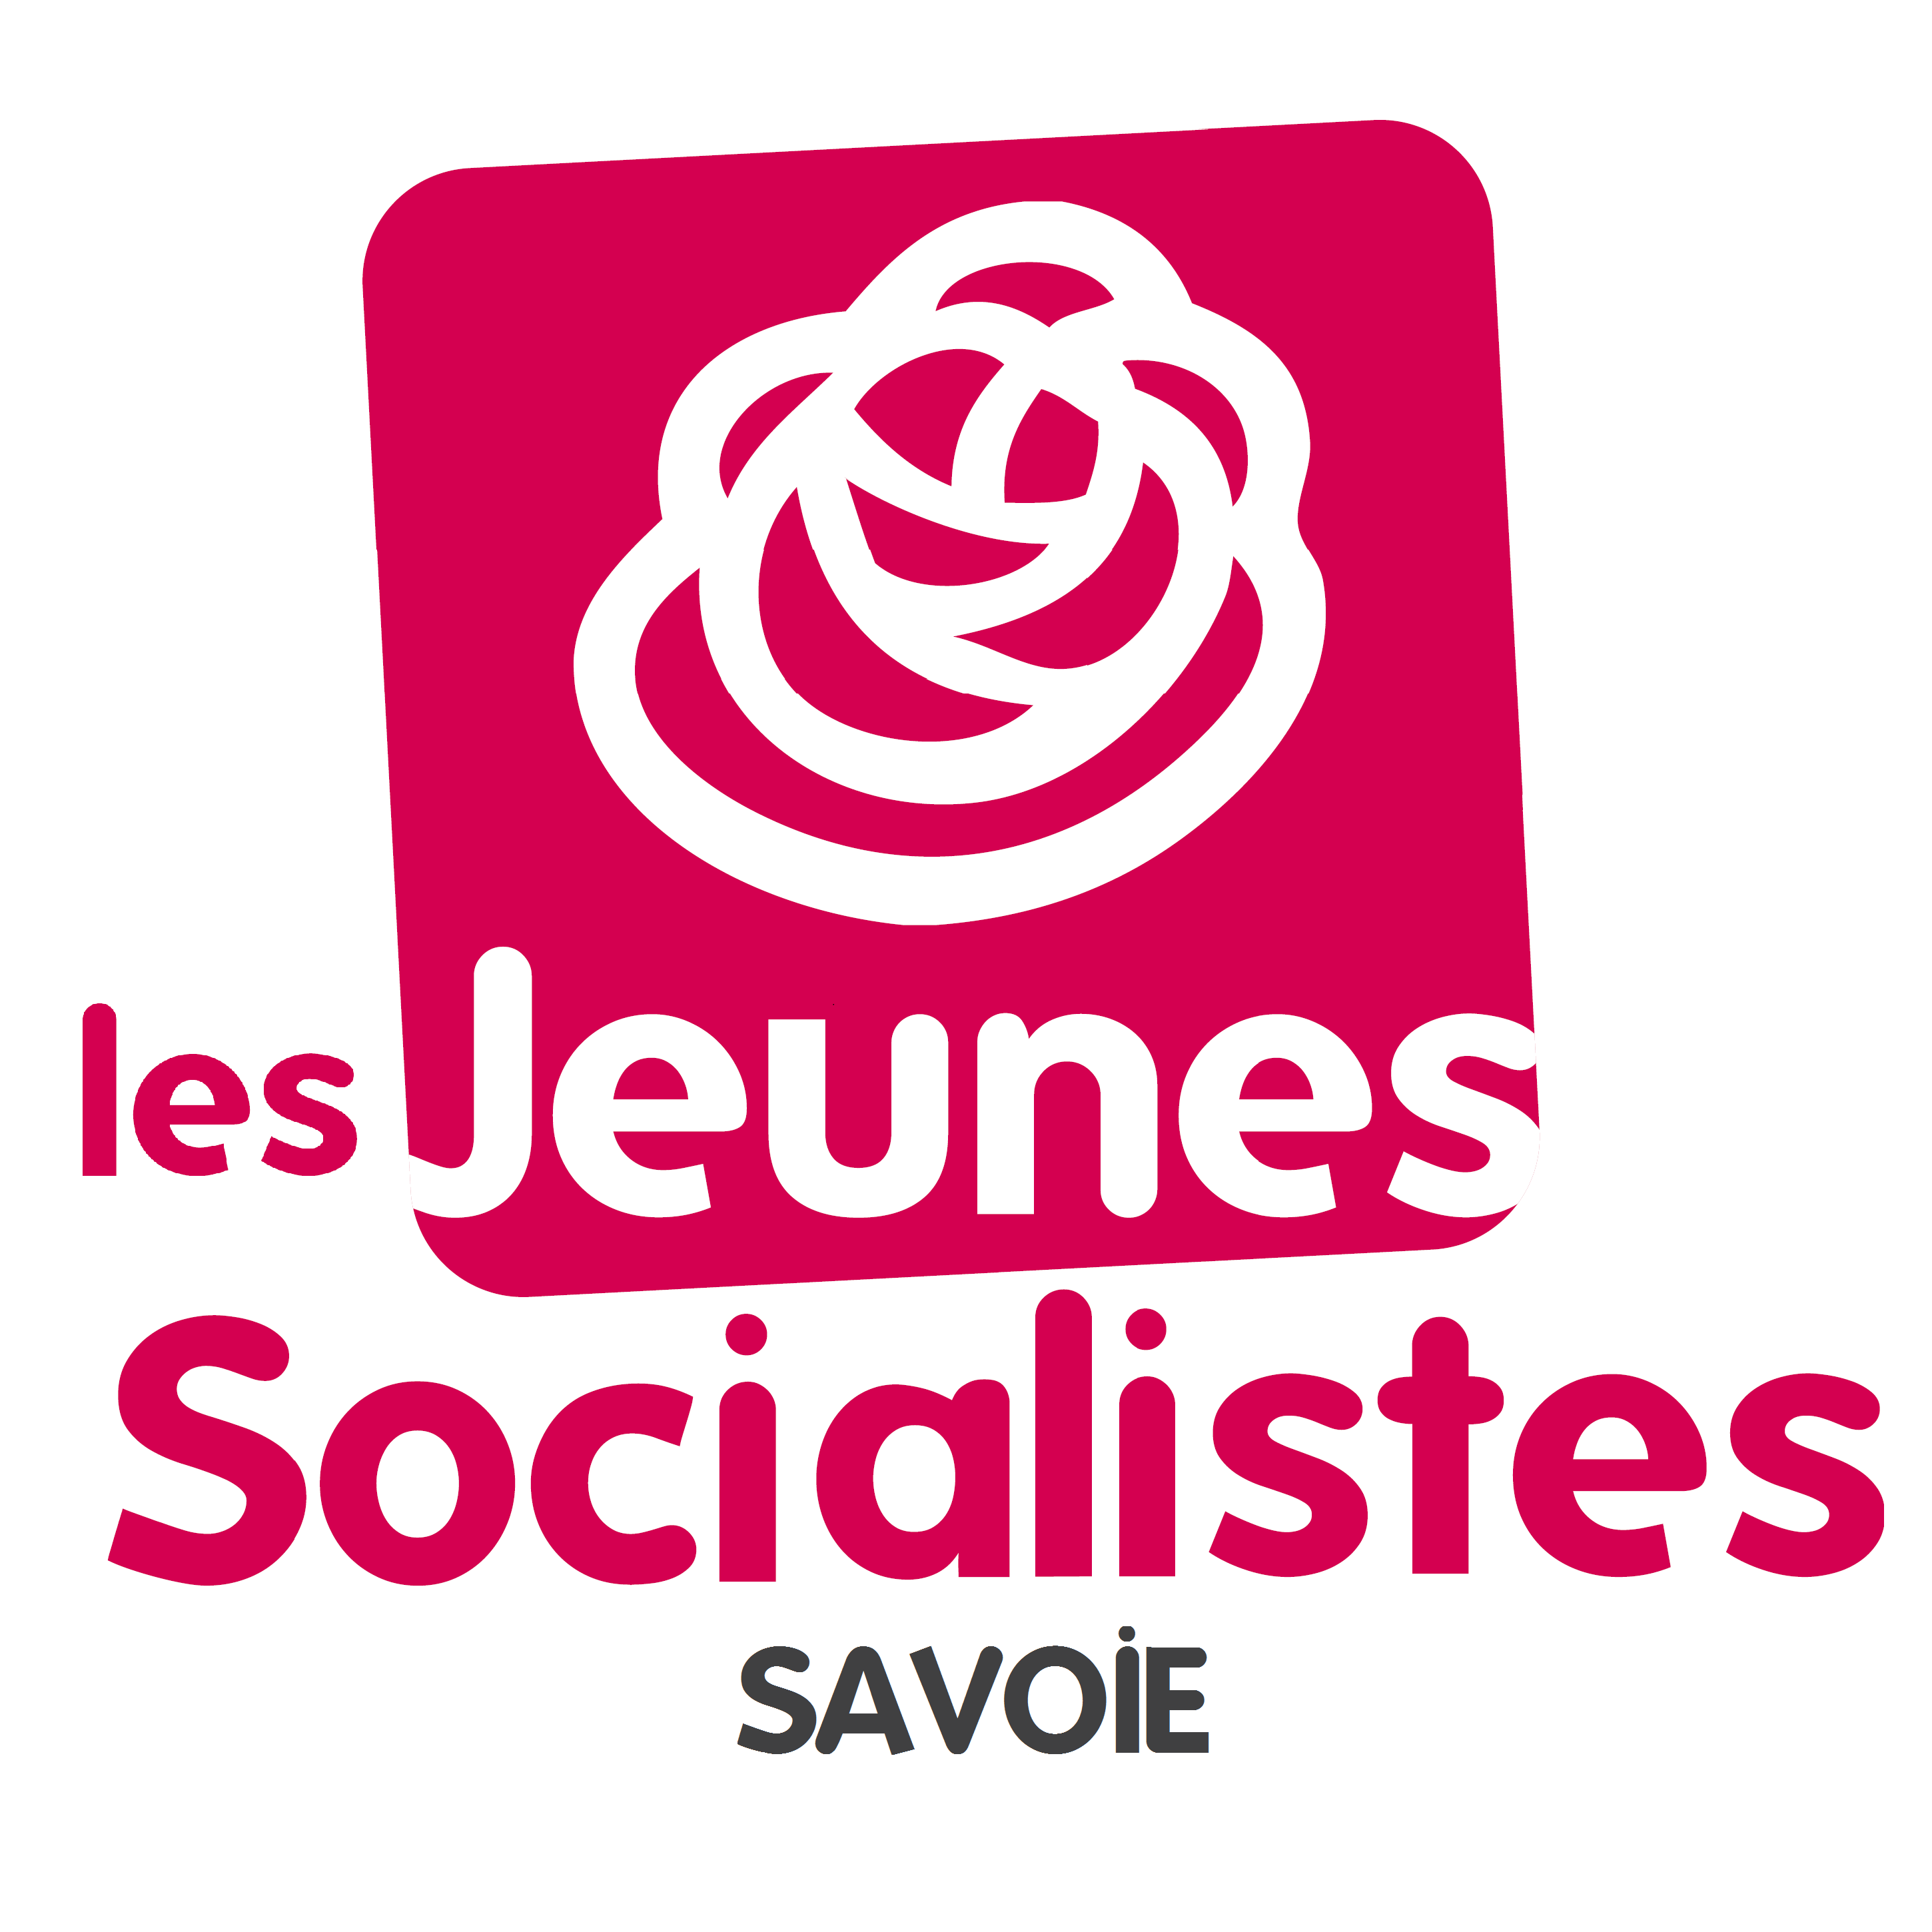 Bienvenue sur le Twitter des Jeunes Socialistes de Savoie ! #gaucheaucoeur #enmouvement mjs.savoie73@gmail.com